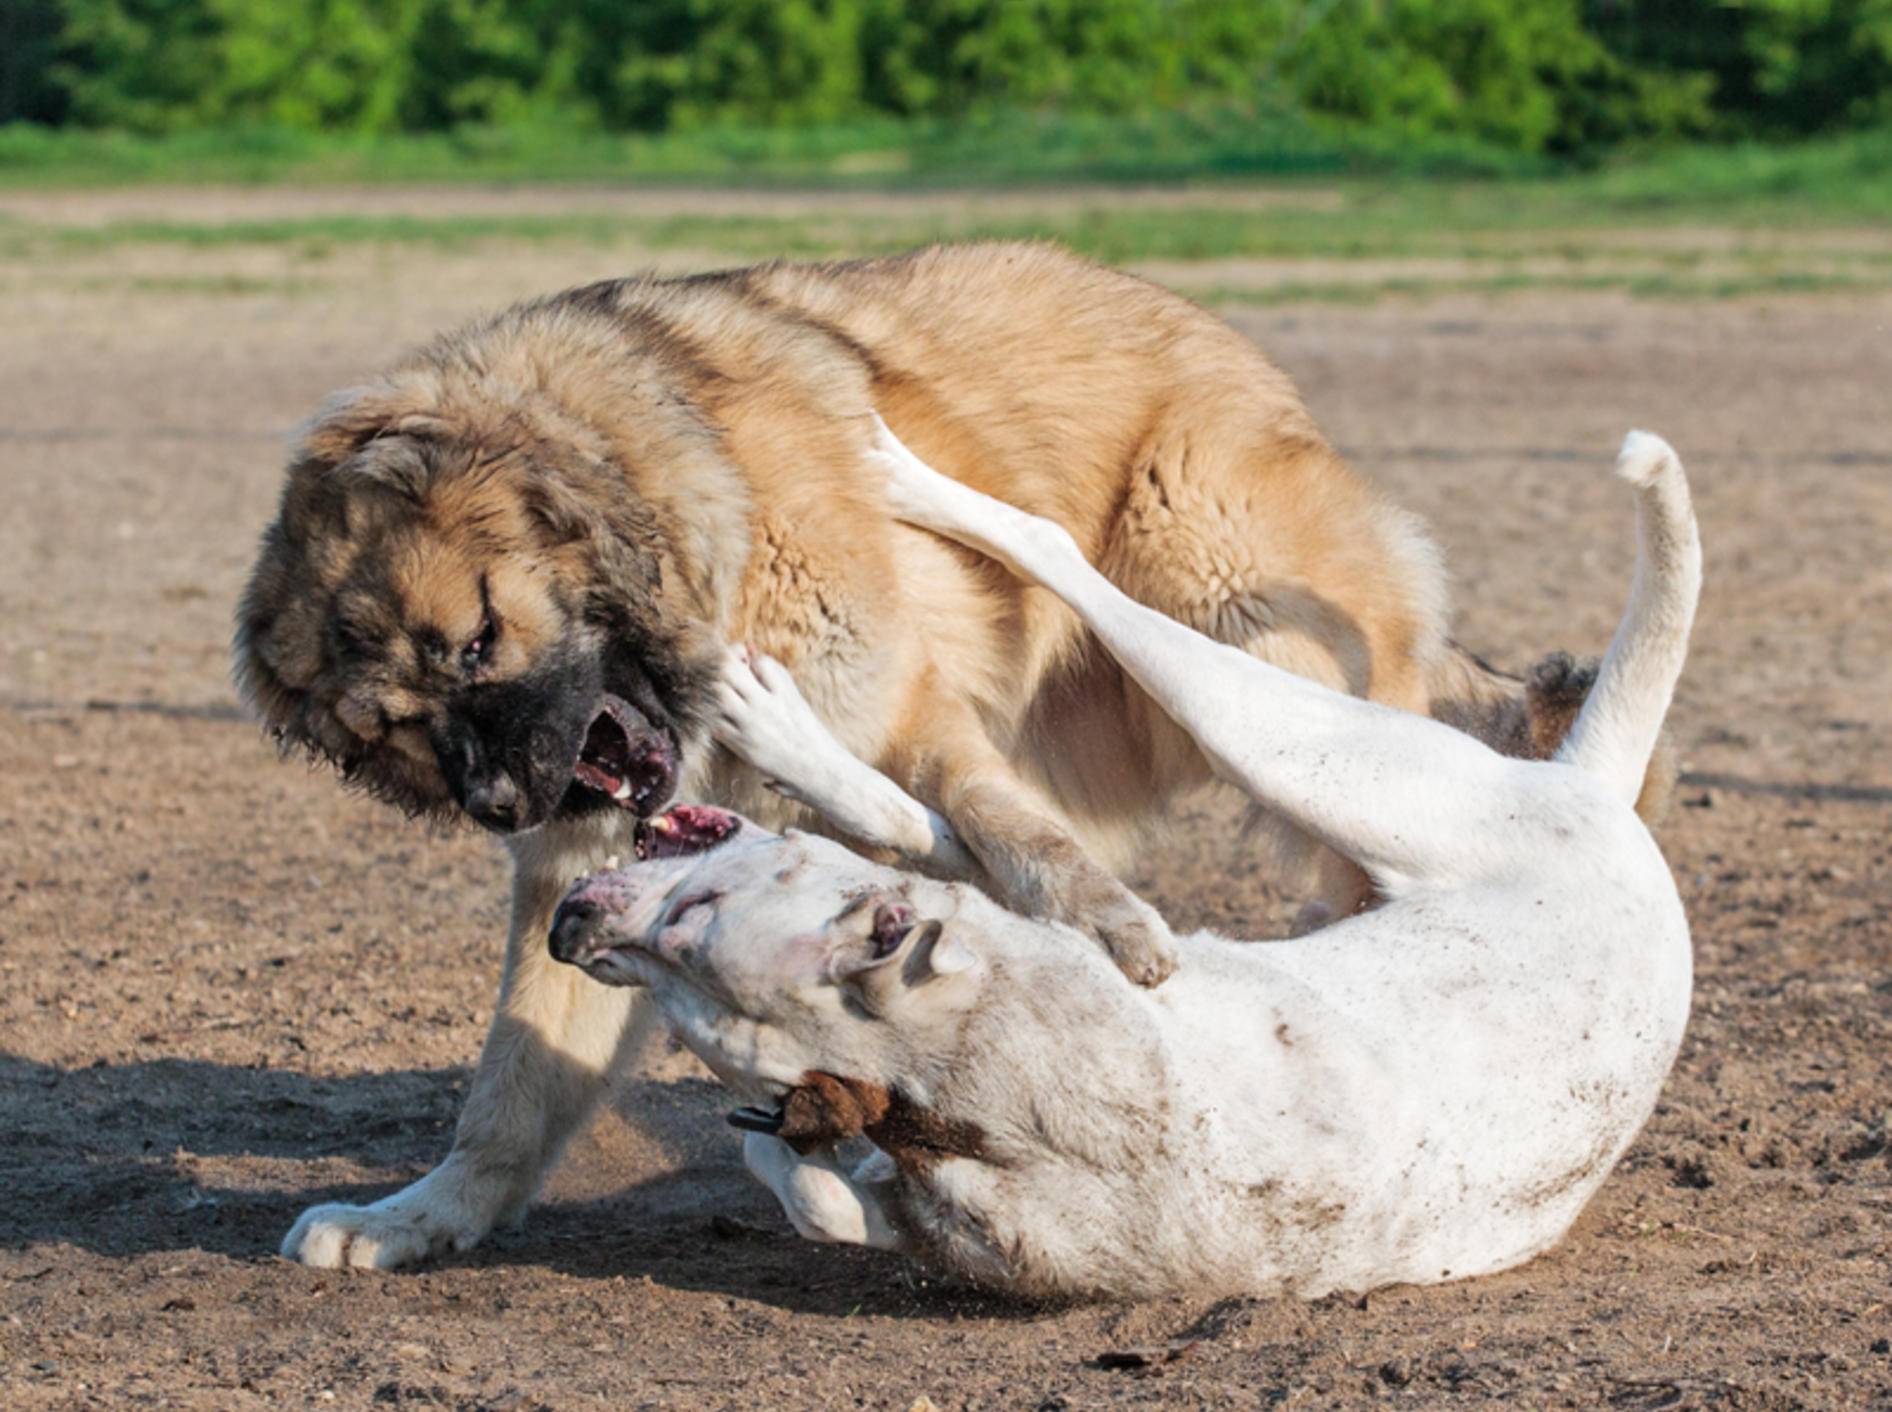 Ist das noch ein Spiel oder schon Mobbing? Zwei Hunde kämpfen – Shutterstock / Oleksiy Rybakov